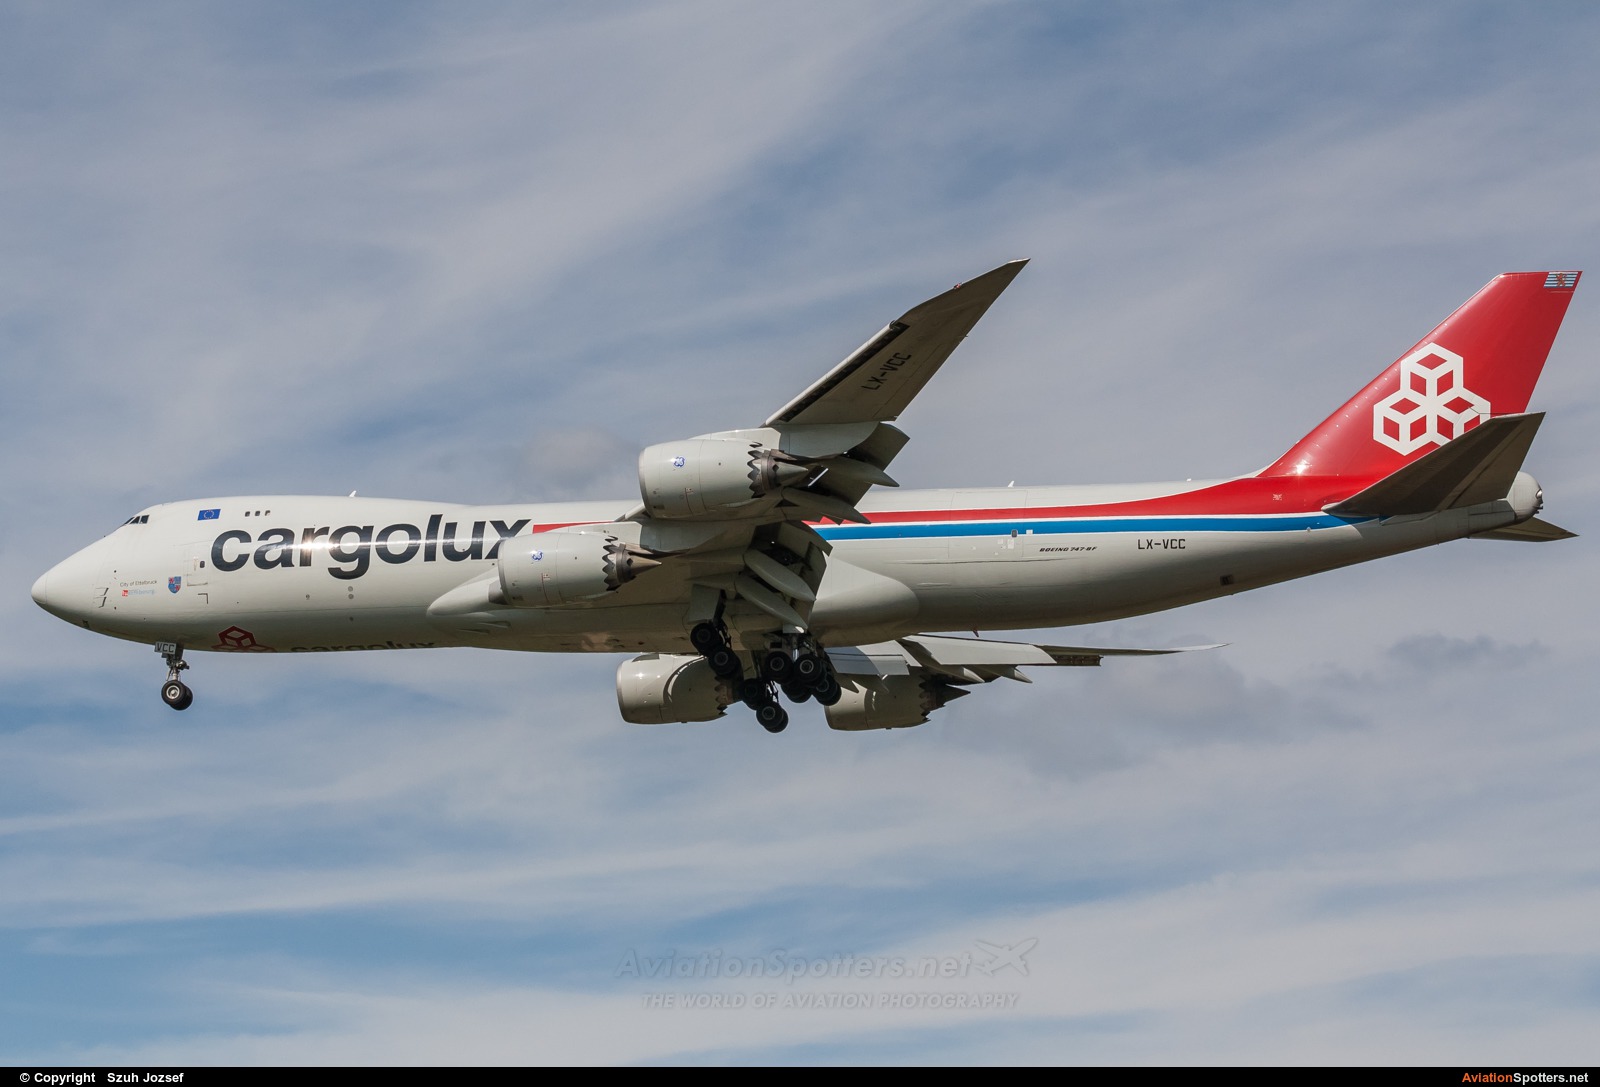 Cargolux  -  747-8F  (LX-VCC) By Szuh Jozsef (szuh jozsef)